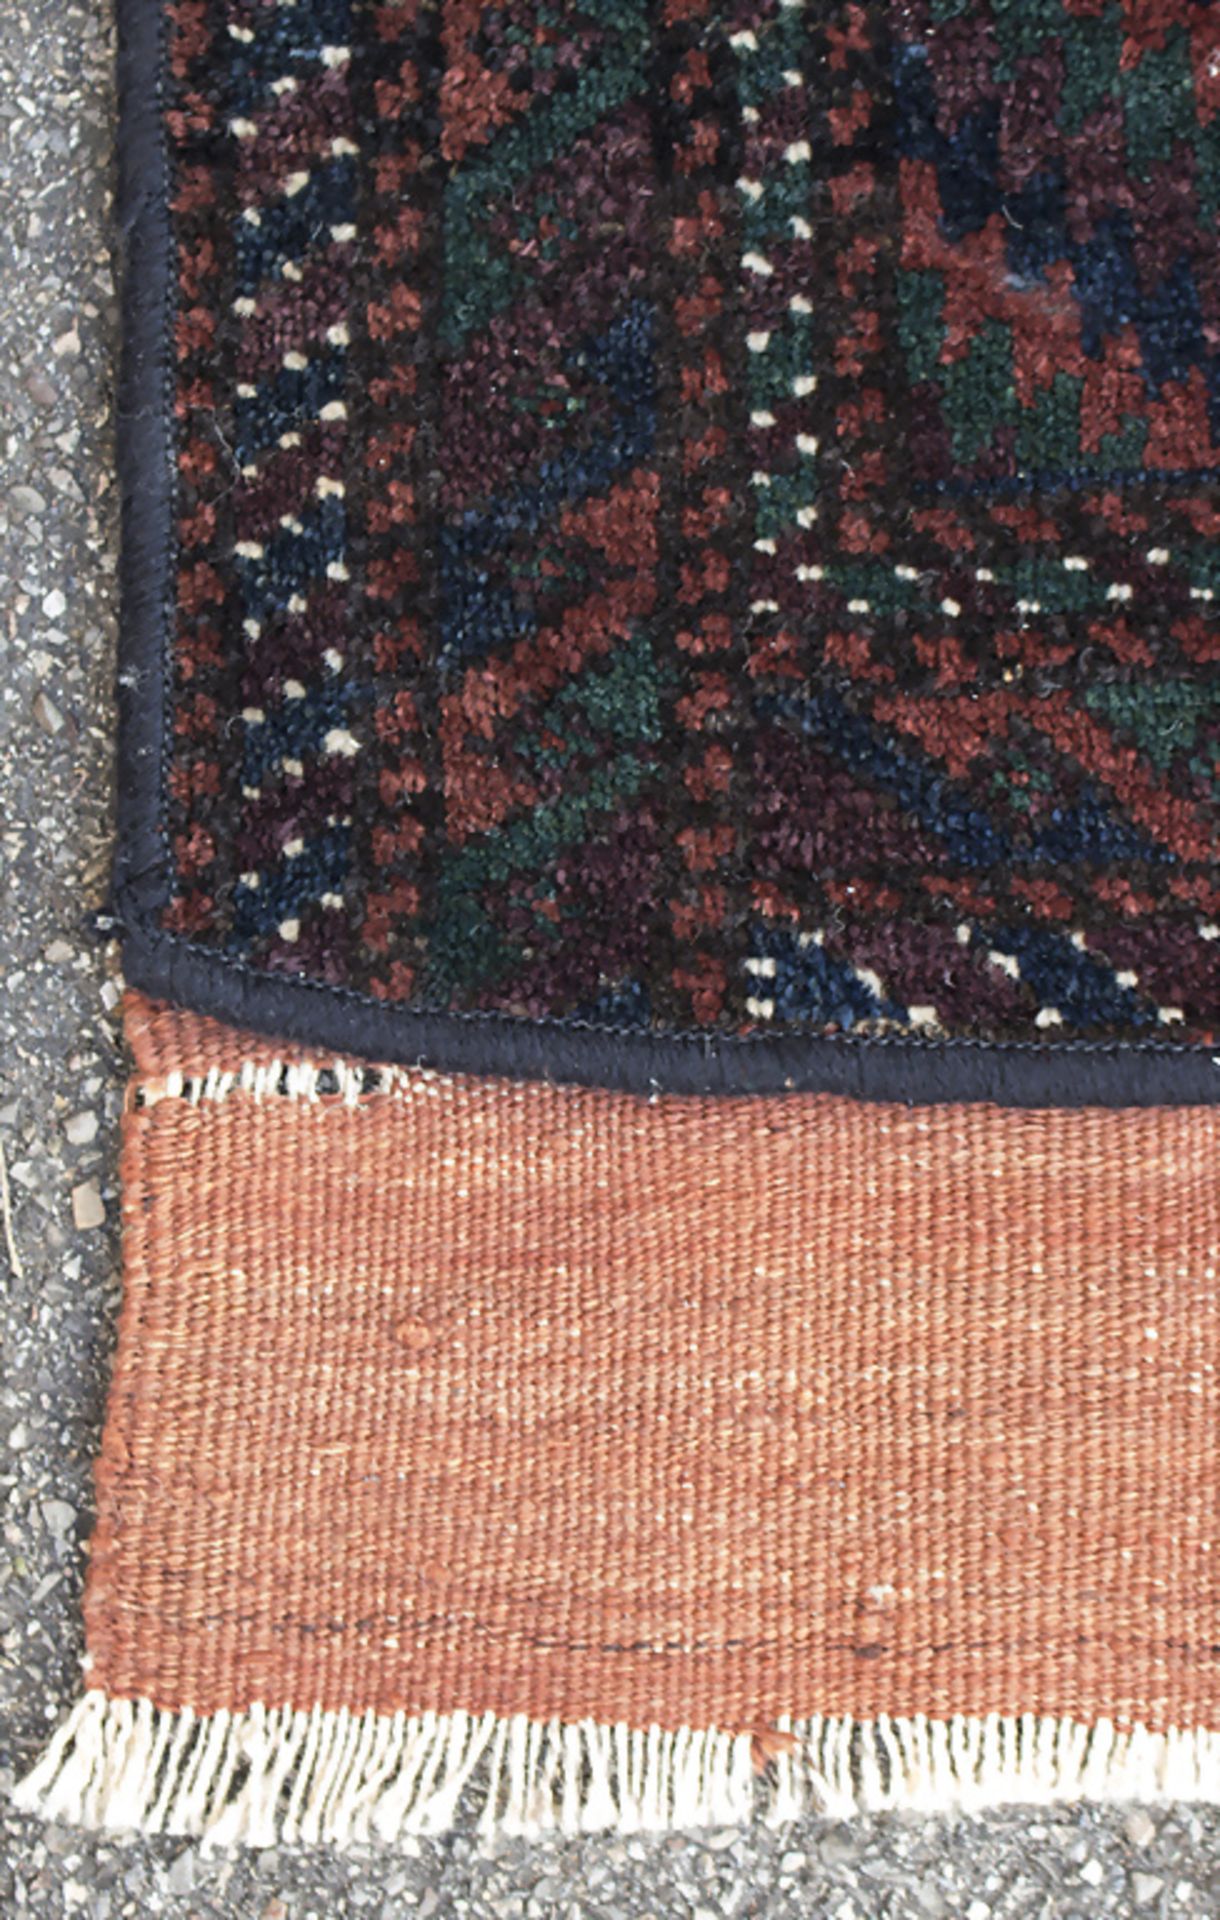 Orientteppich, Zelttasche / An oriental carpet, tentbag - Image 2 of 4